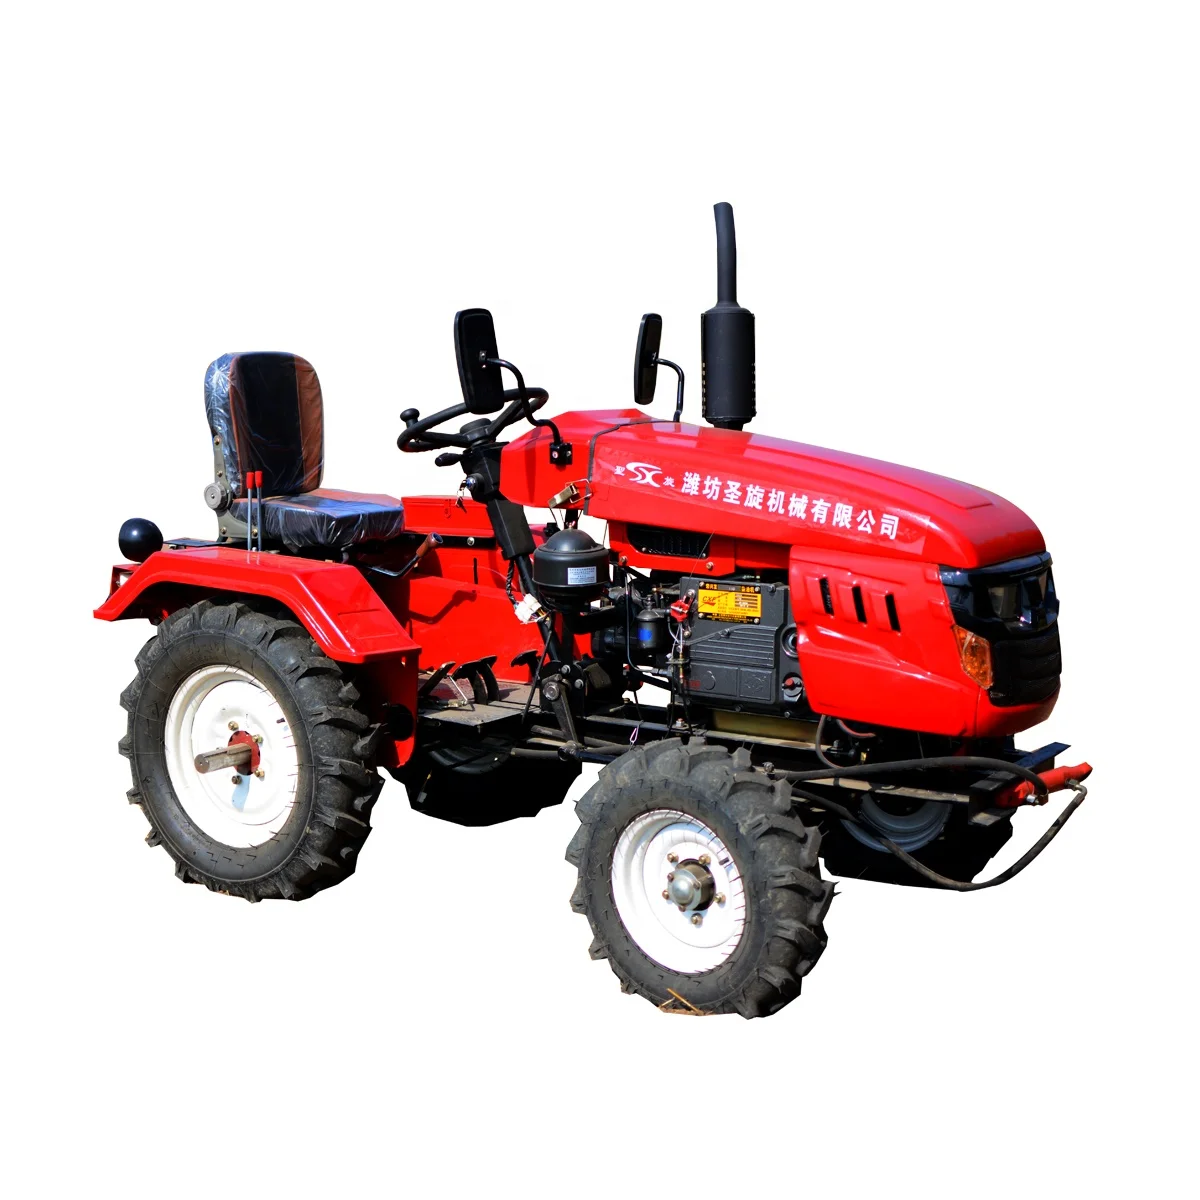 Mini tractor. TAFE 6022 мини трактор. Китайский трактор Weifang. Мини трактор дф324. Мини-трактор МТМ-10.